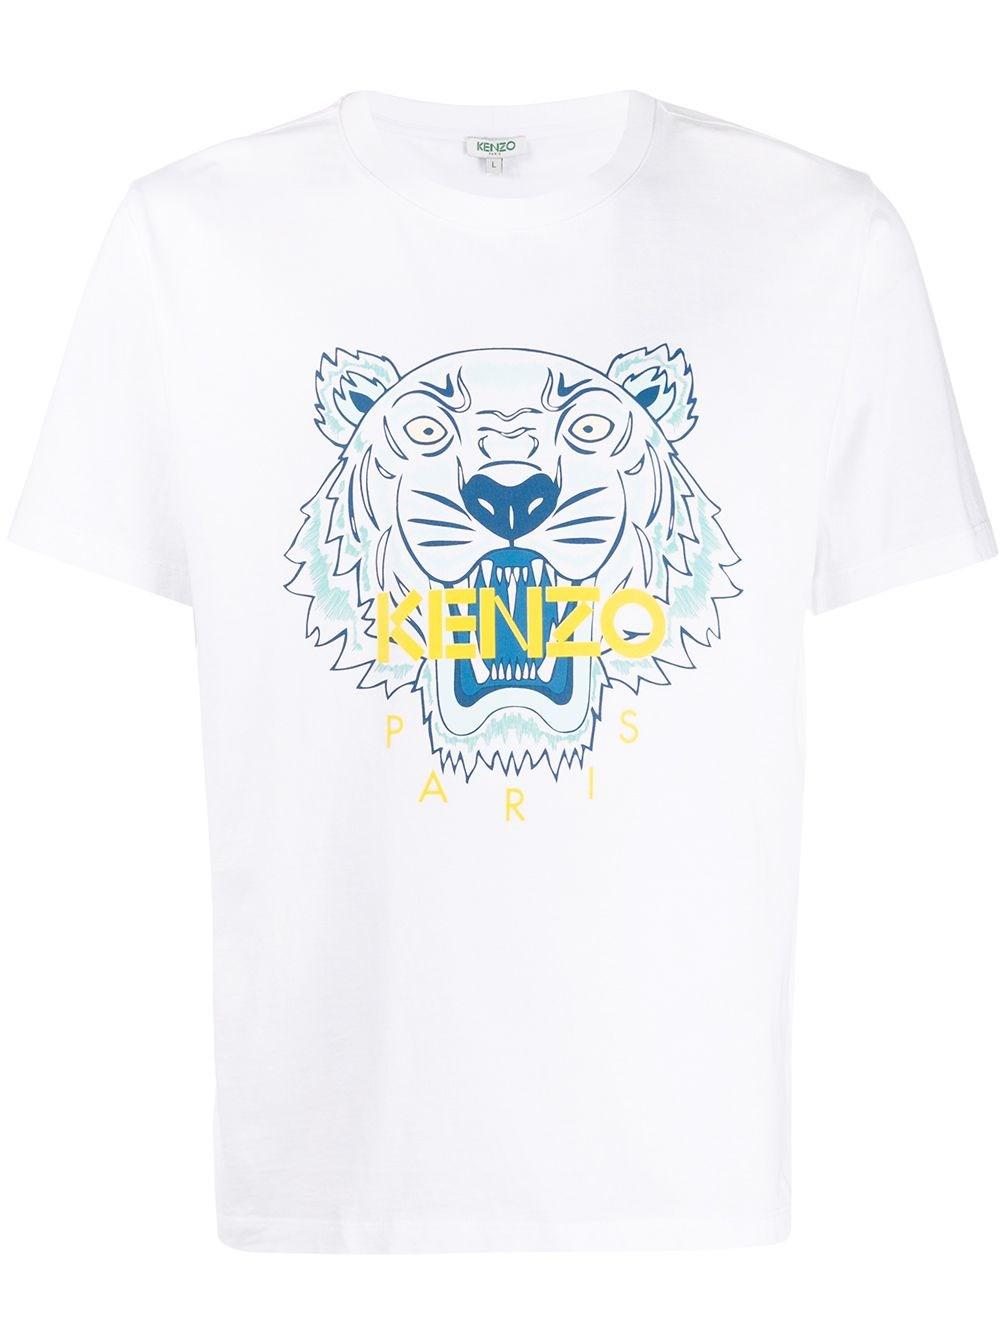 KENZO Logo T-shirt in White for Men - Lyst